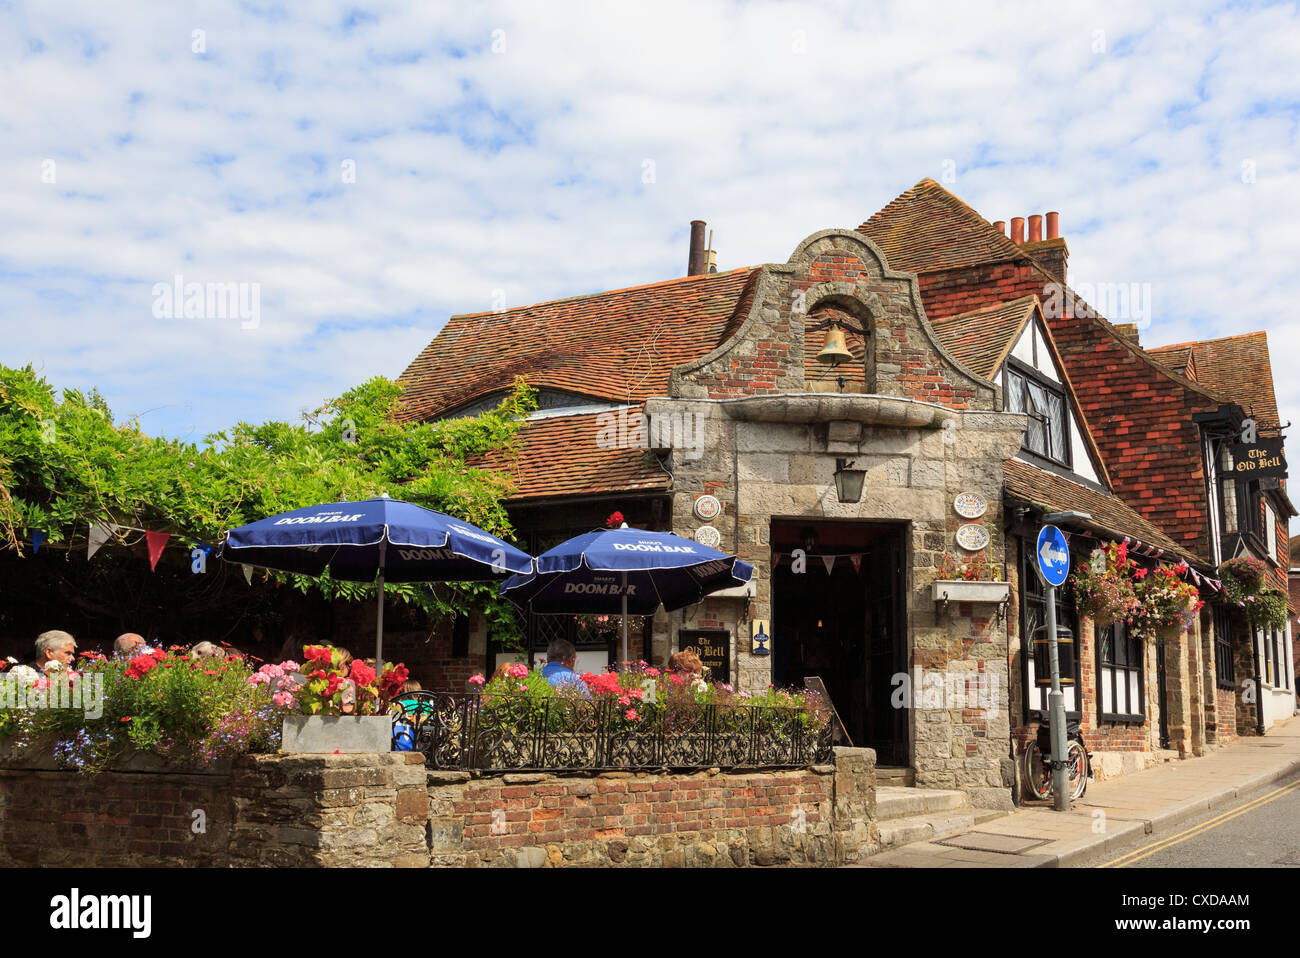 YE Old Bell Inn 15th secolo contrabbandieri pub nella storica città cinque porto con persone seduti fuori in estate. Rye Sussex Inghilterra Regno Unito Foto Stock